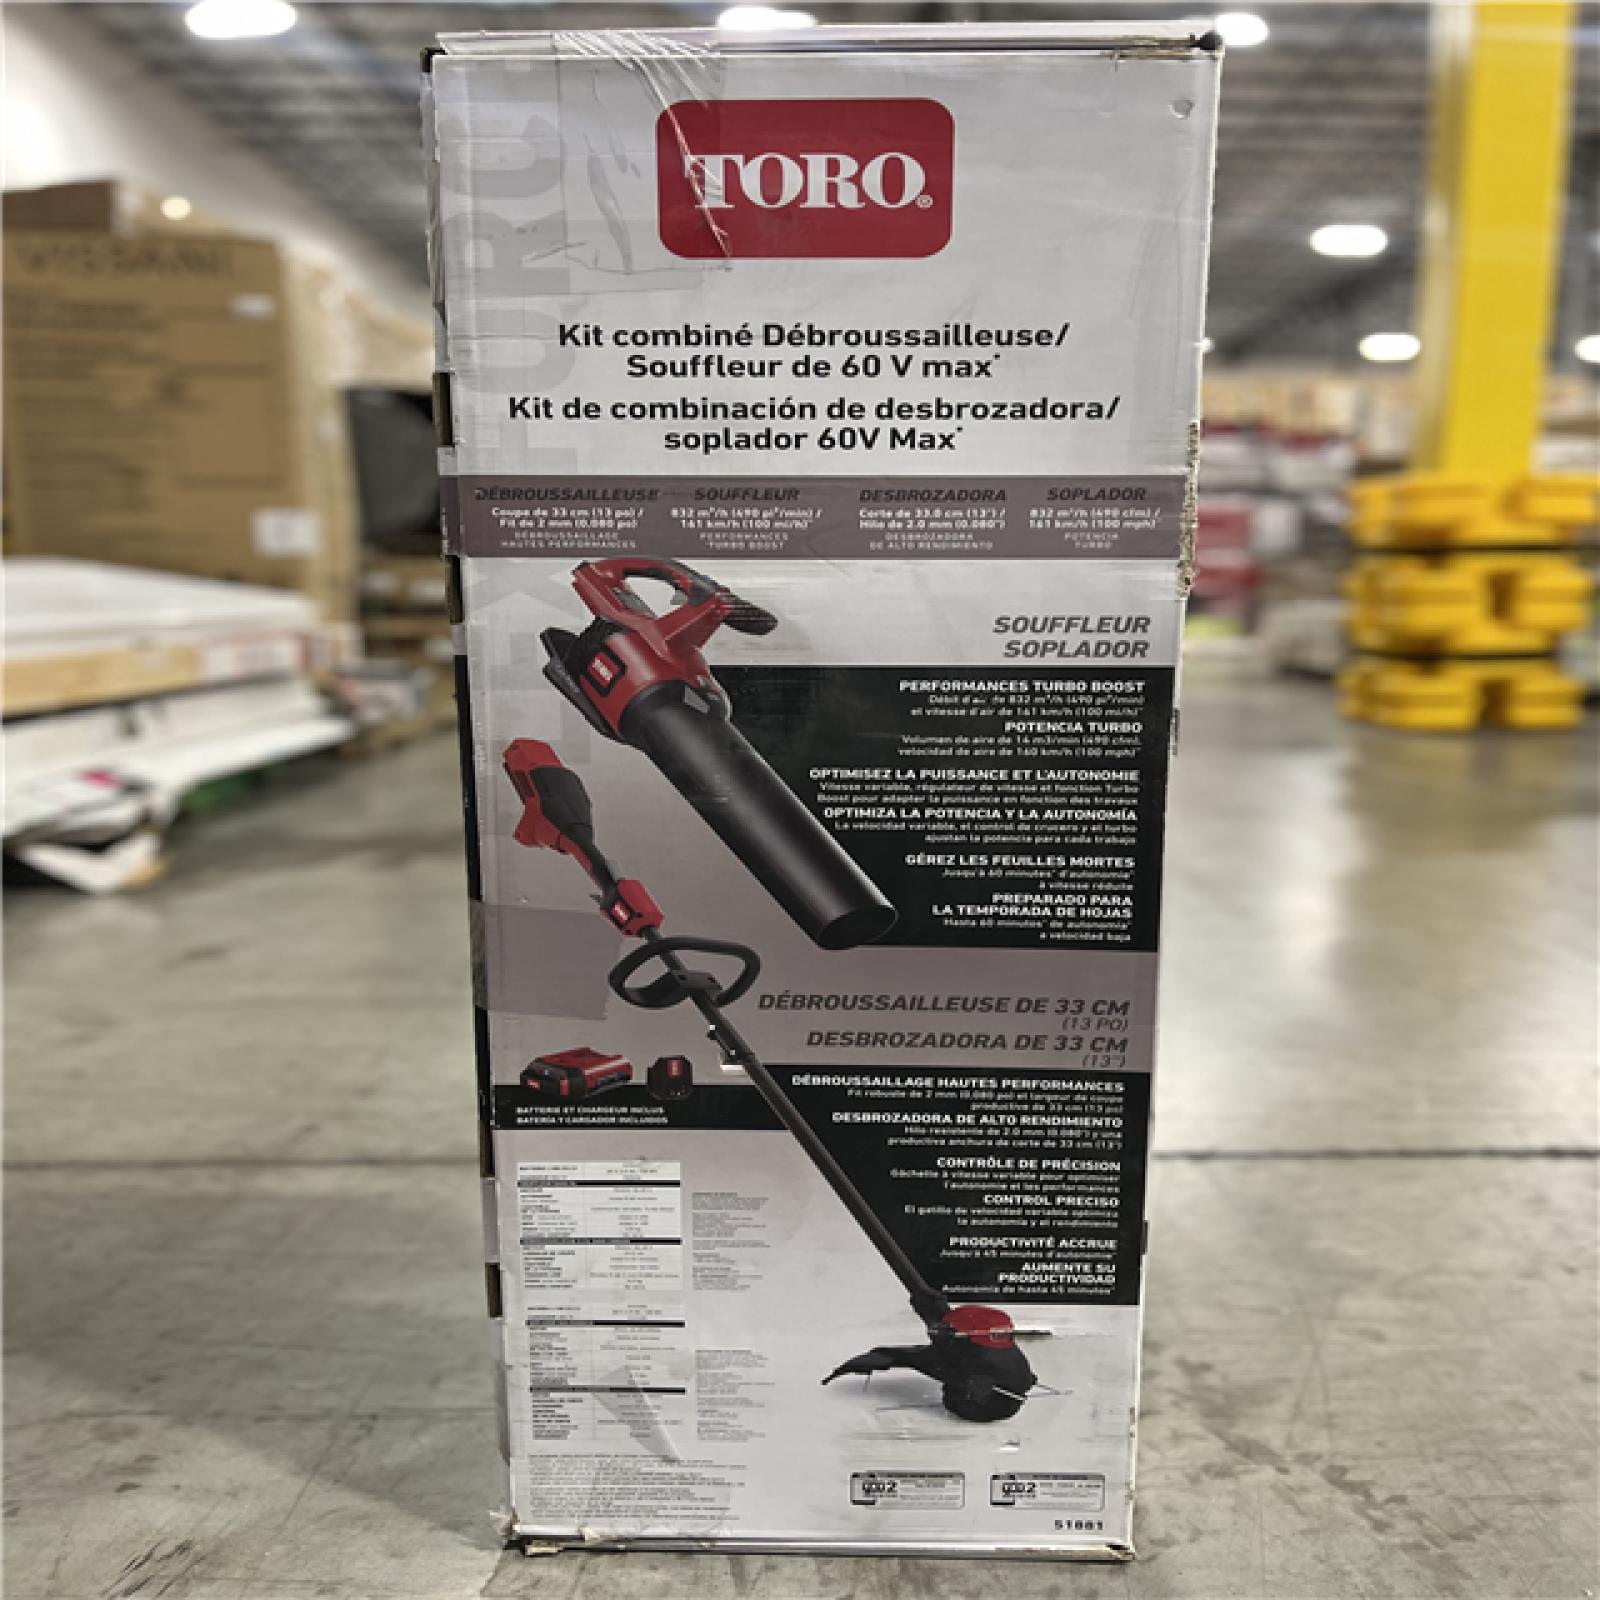 NEW! - Toro 13 in. 60 V Battery Blower/Trimmer Kit (Battery & Charger)